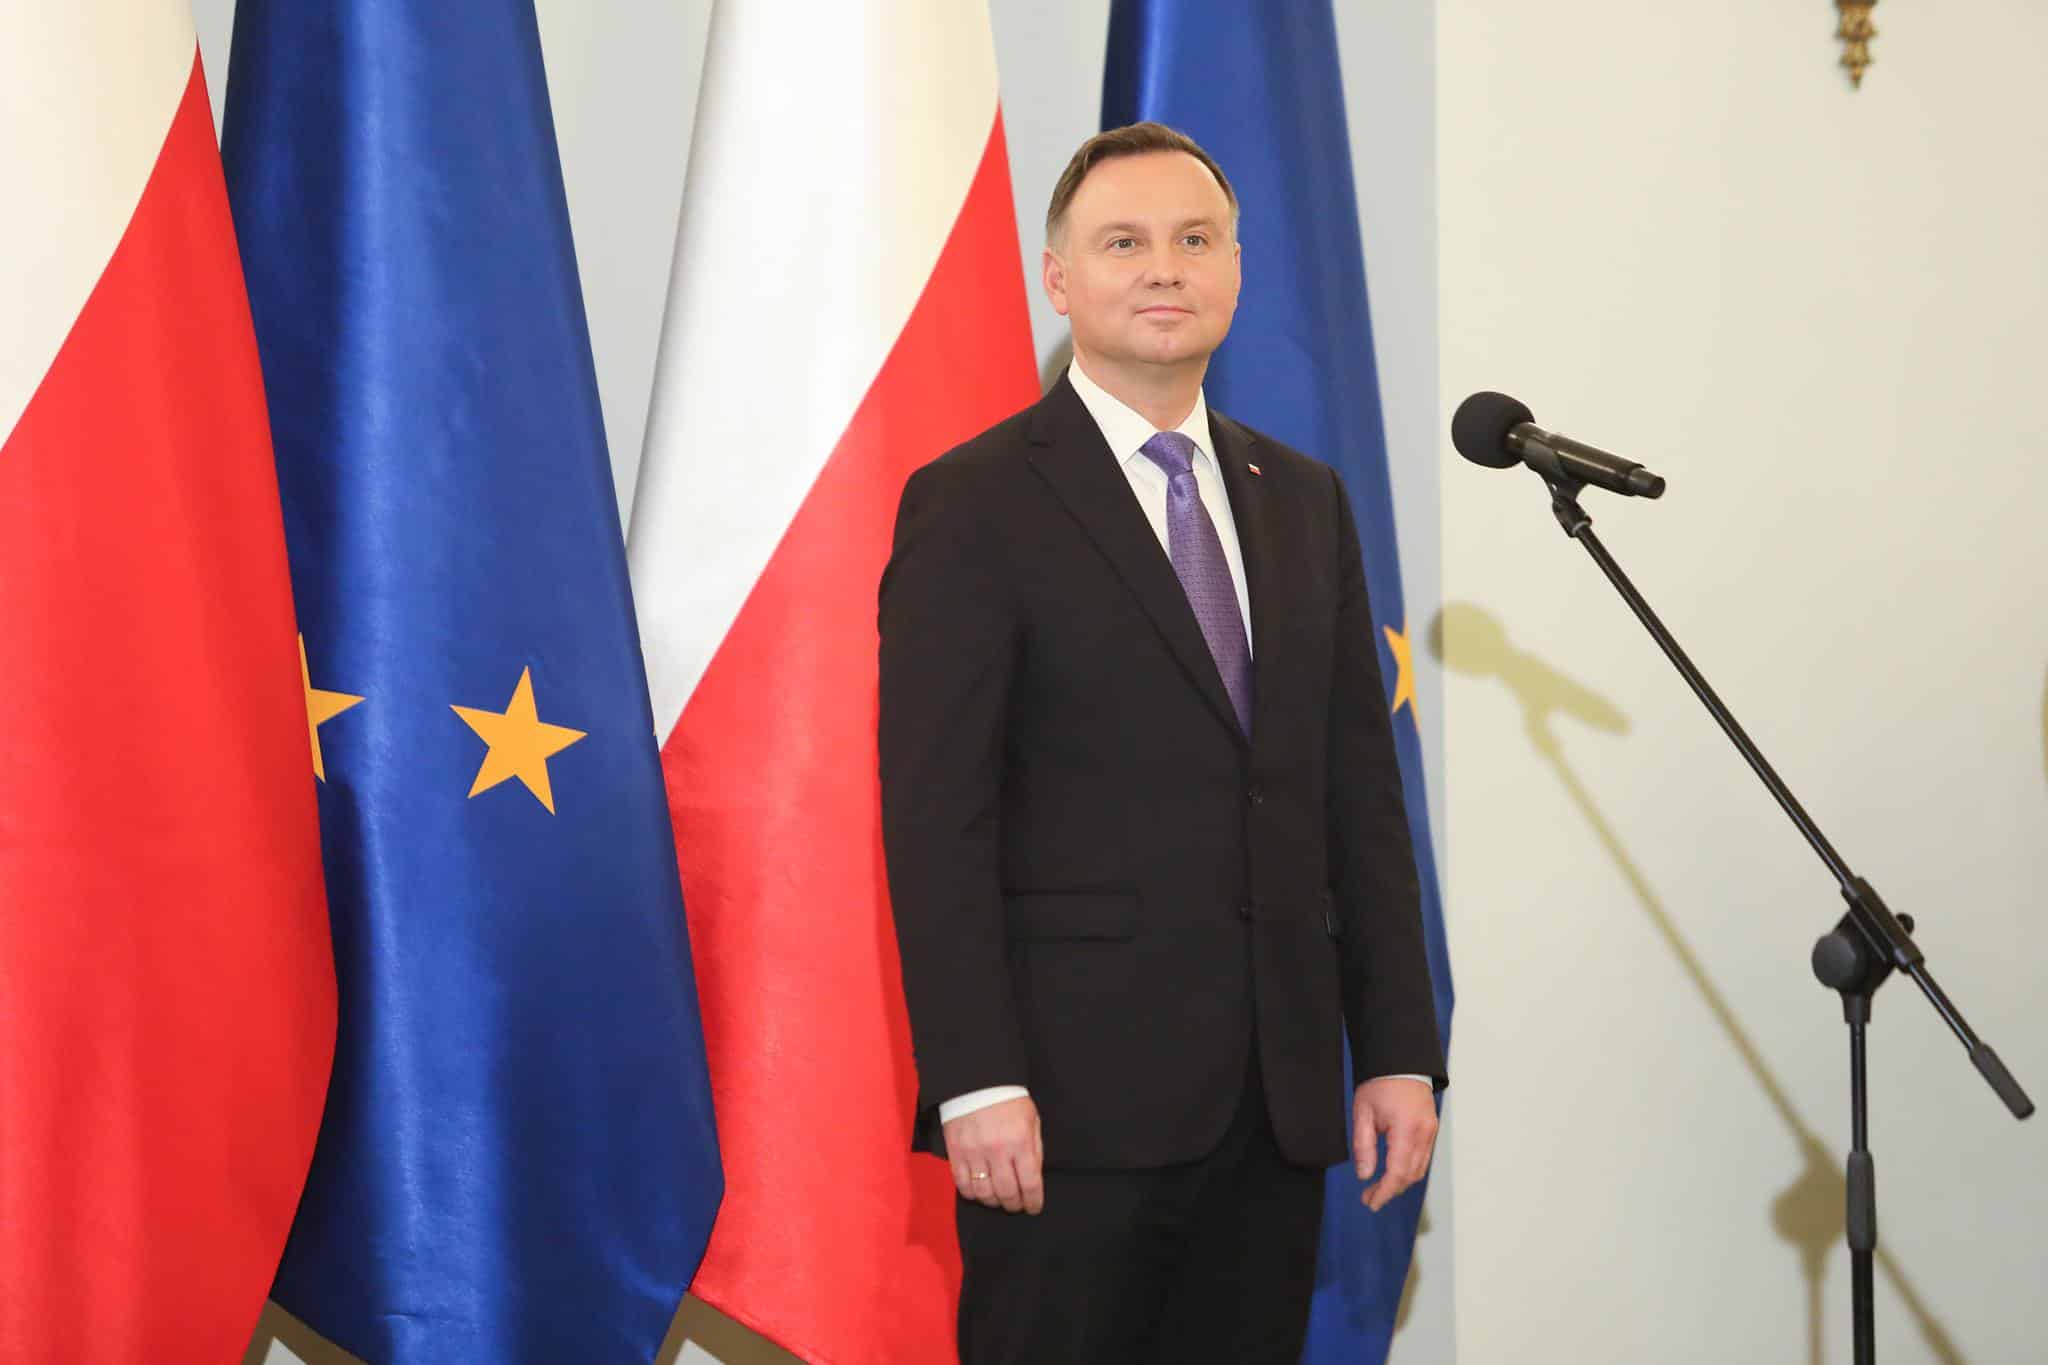 Duda con bandiere della Polonia e dell'Unione Europea